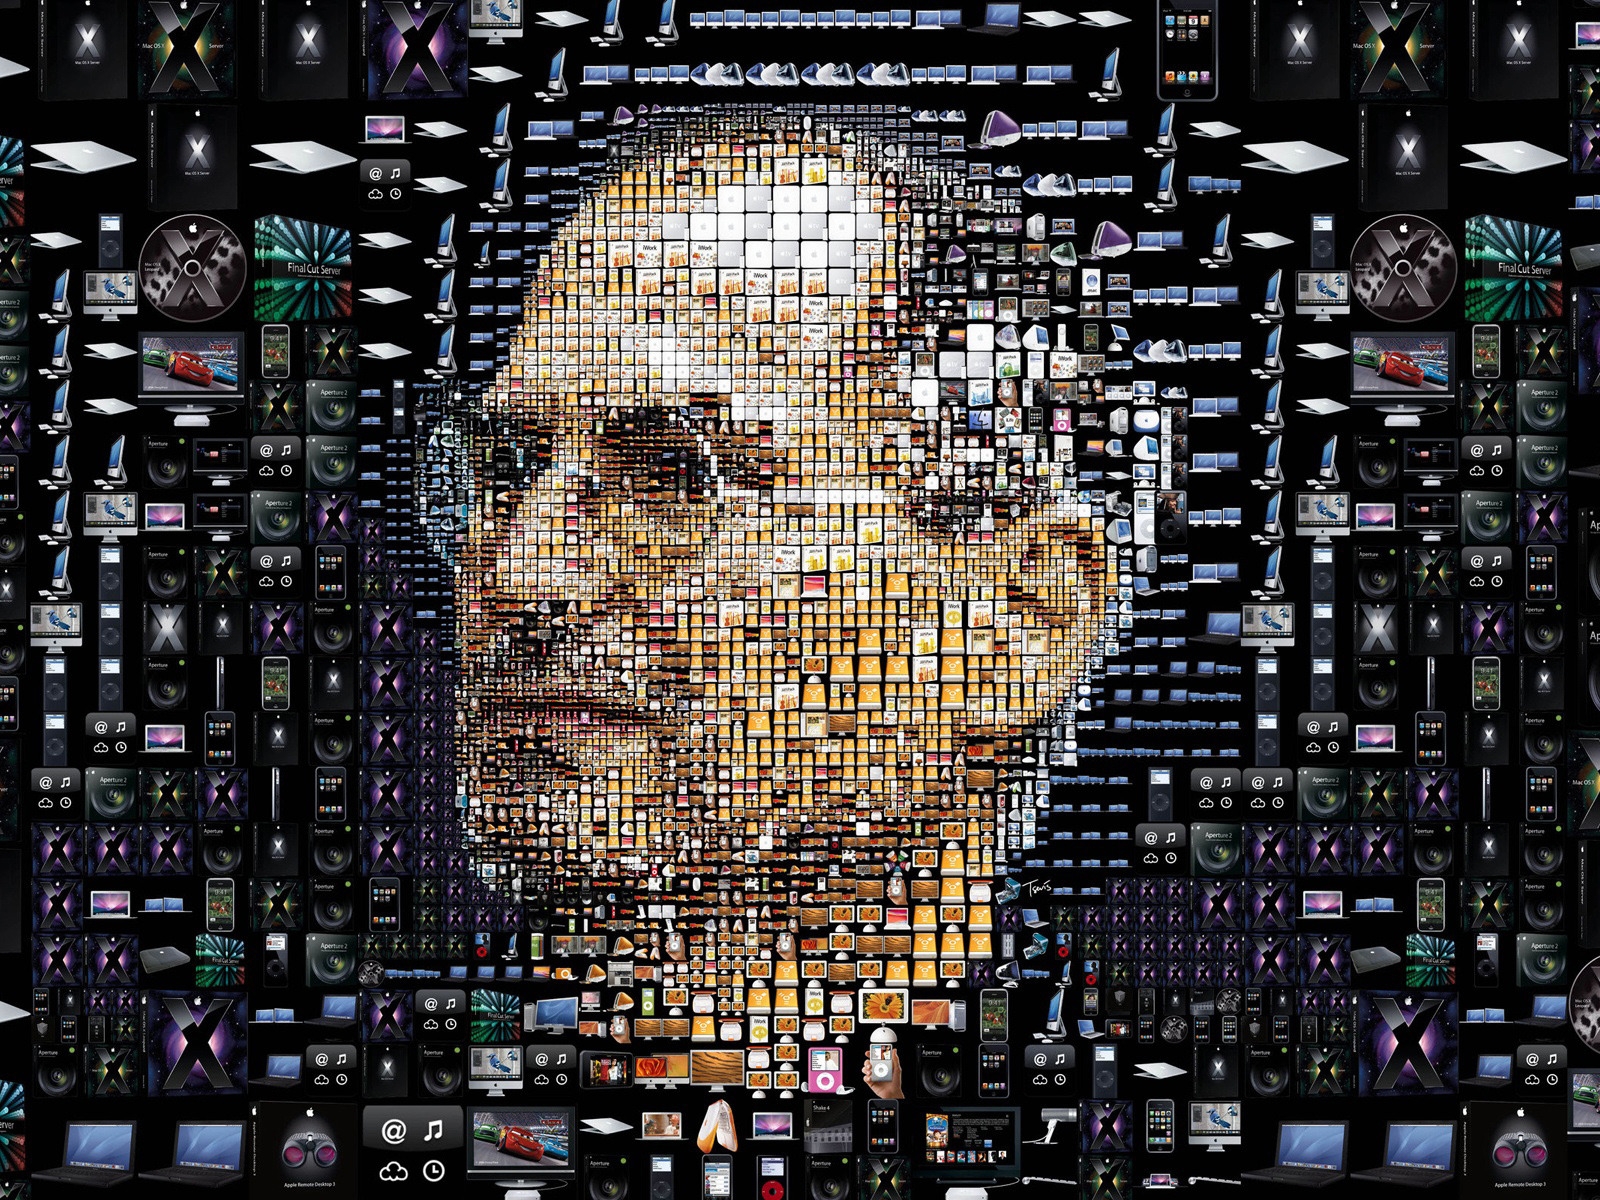 Steve Jobs for 1600 x 1200 resolution